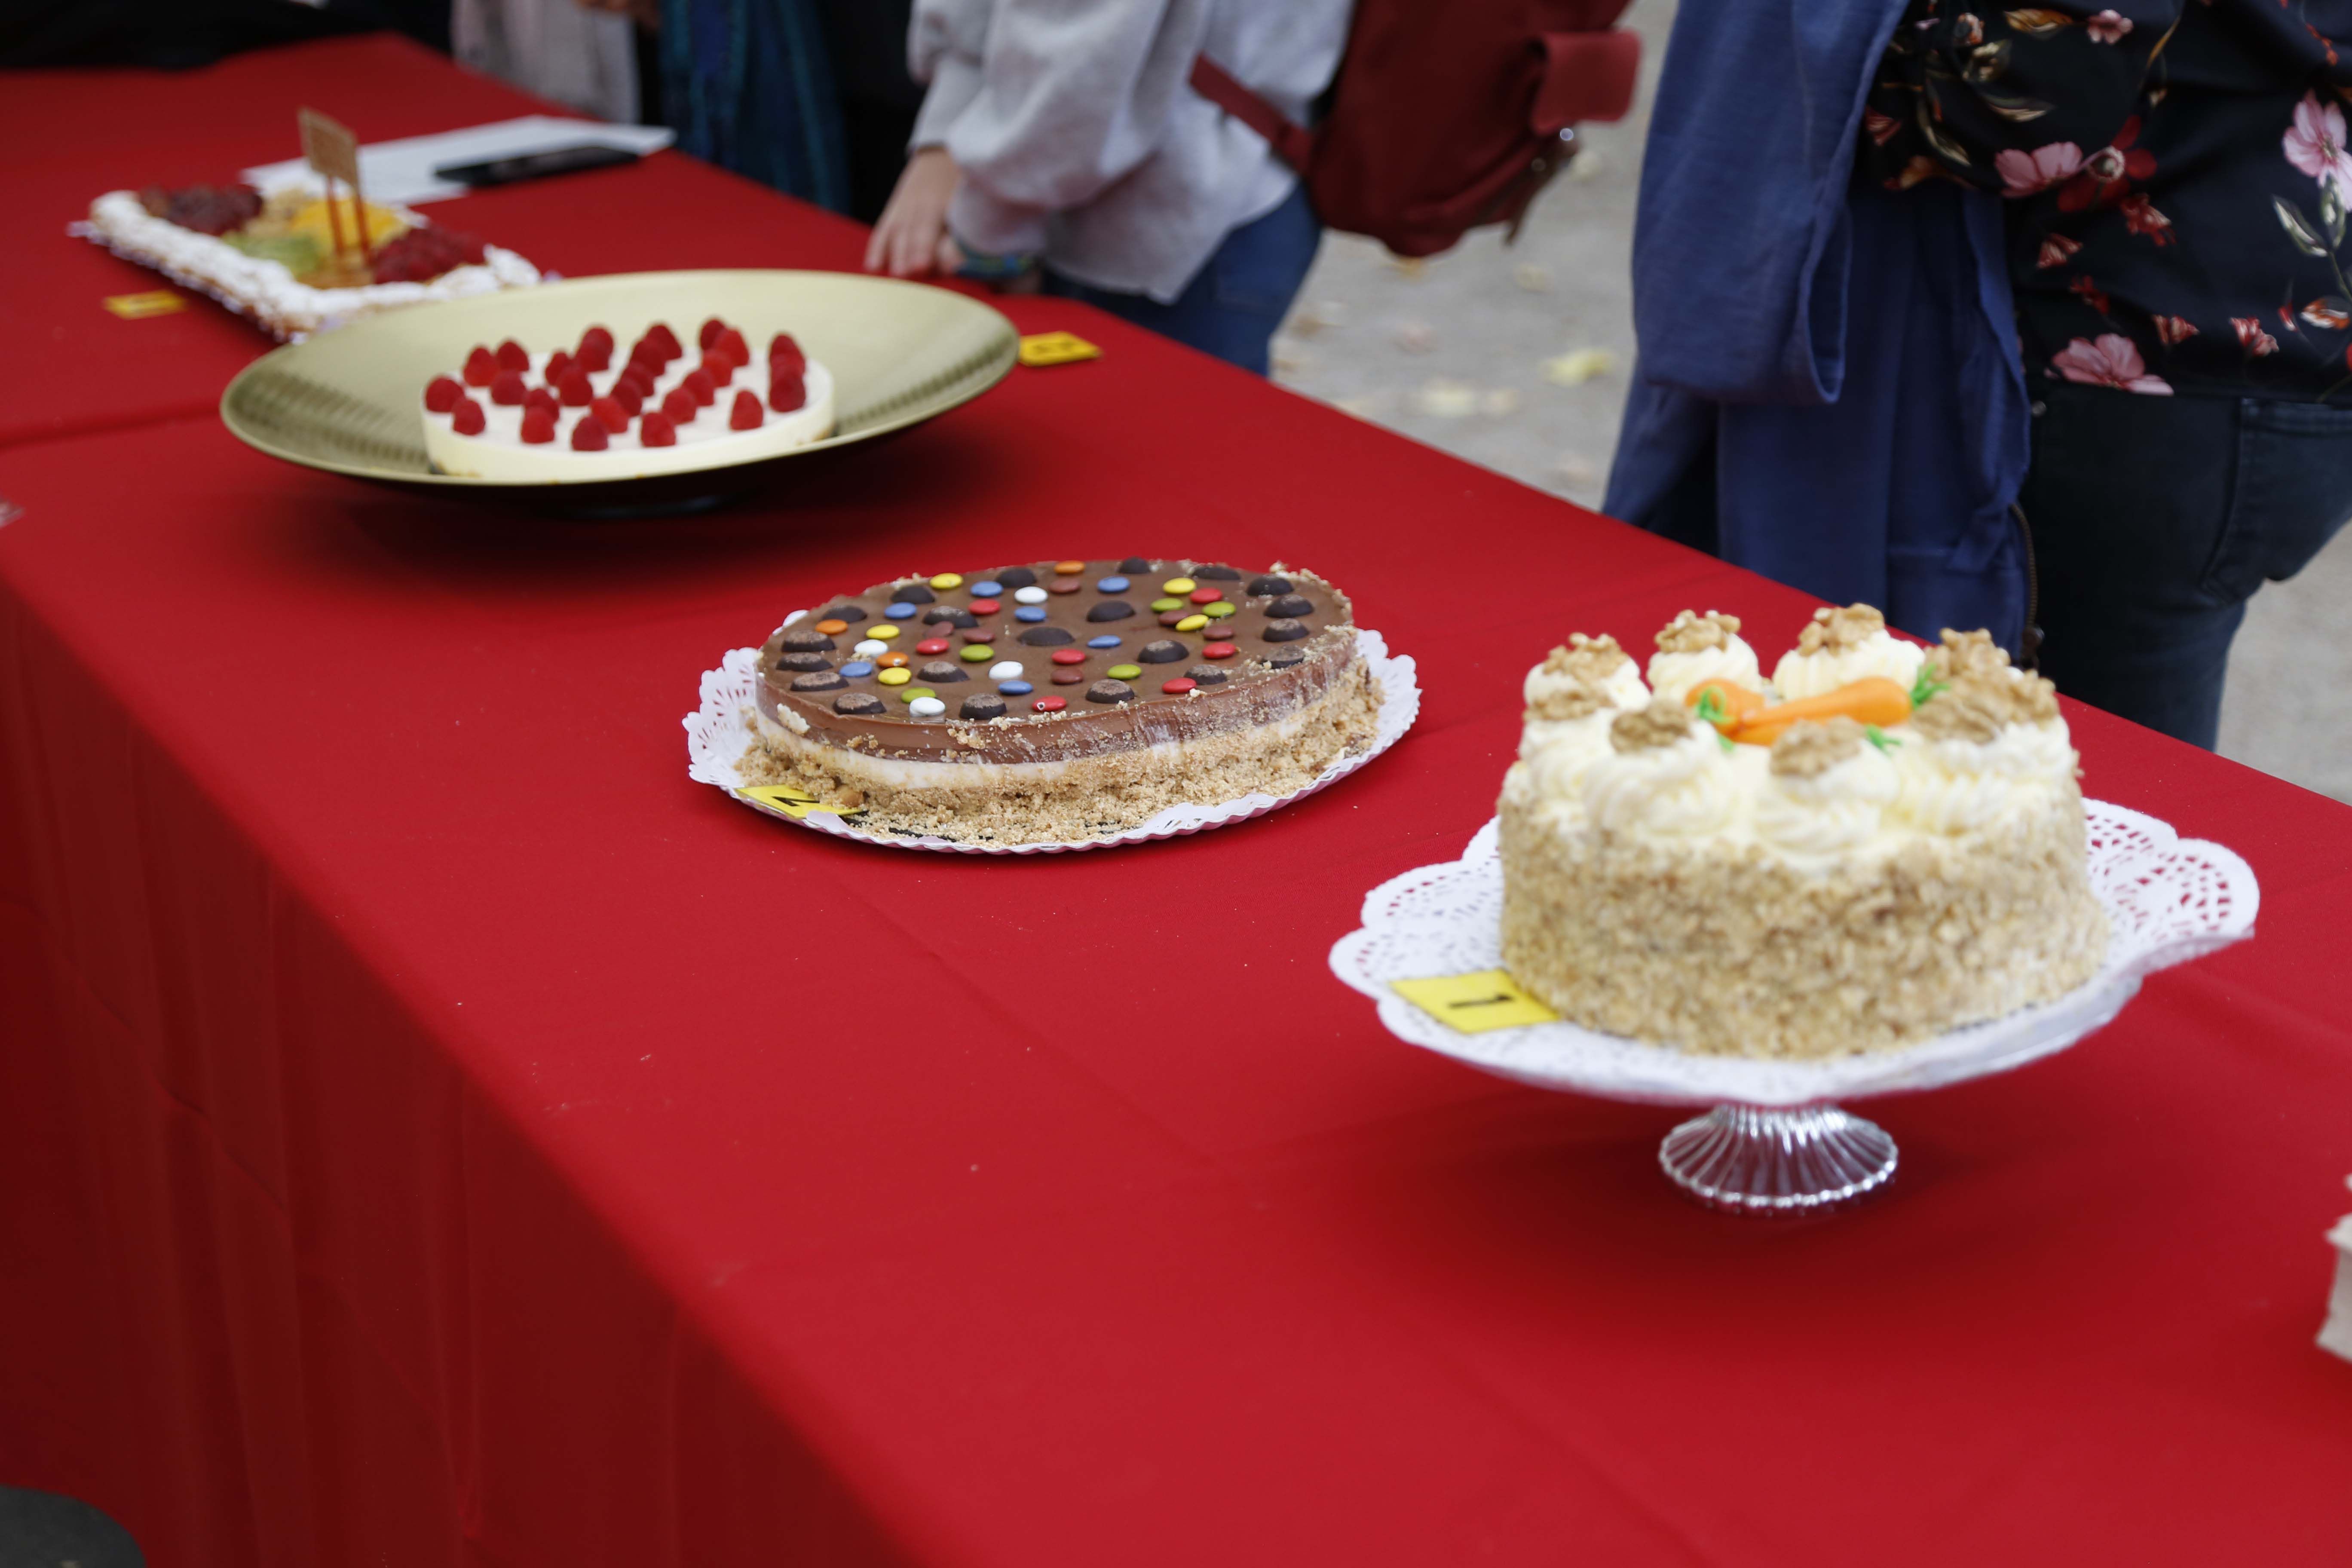 Concurs de pastissos a la Festa Major del barri del Monestir- Sant Frances 2019. FOTO: Anna Bassa